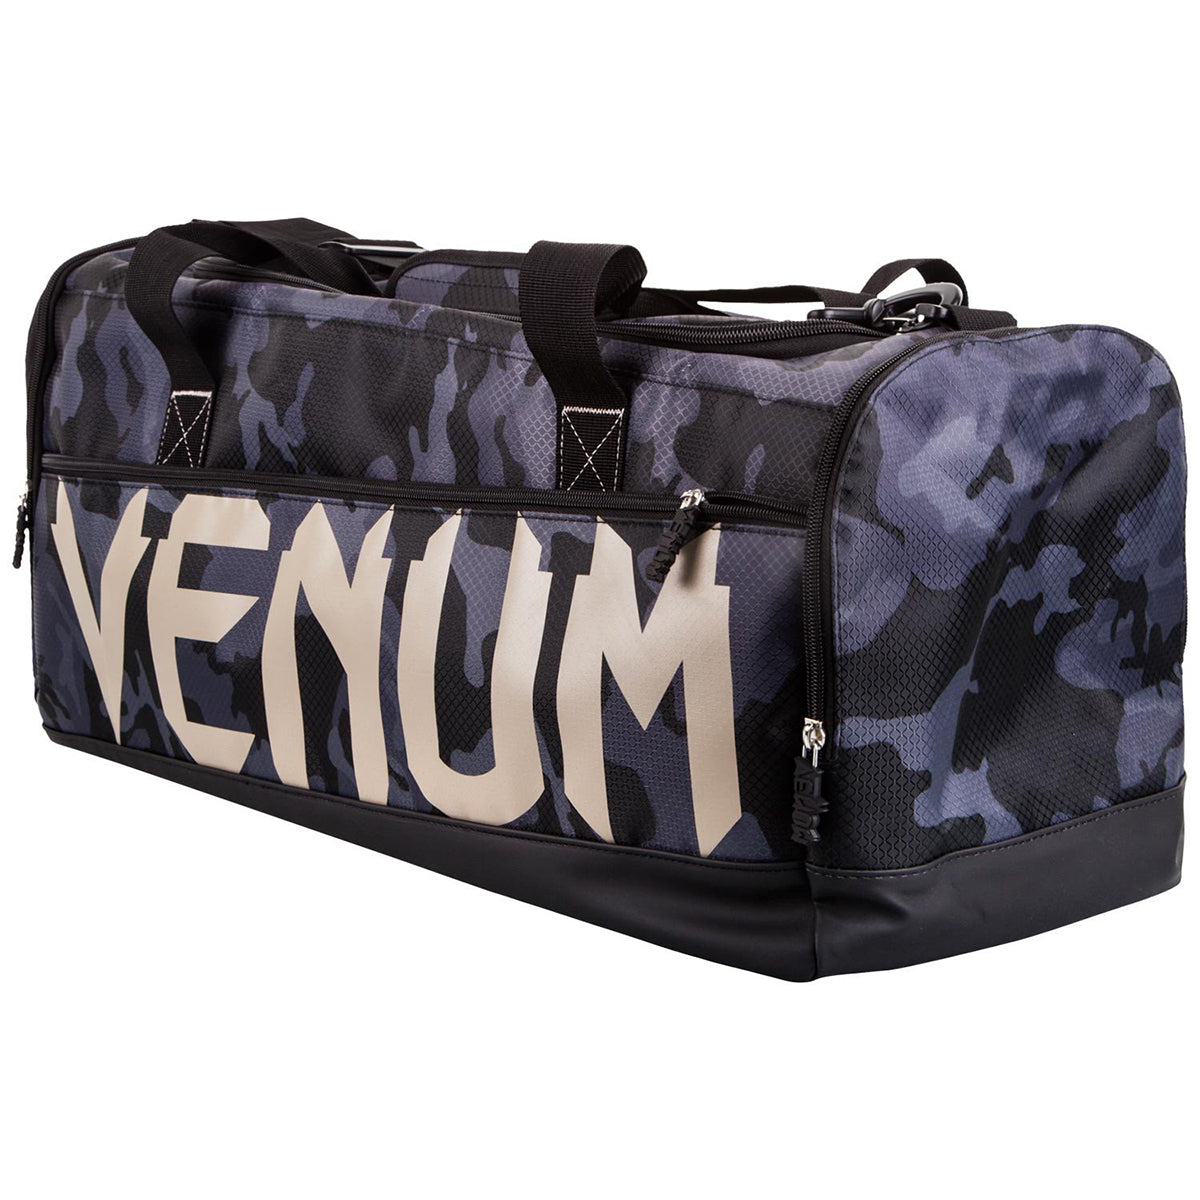 Venum Sparring Sport Equipment Duffel Bag - Dark Camo Venum